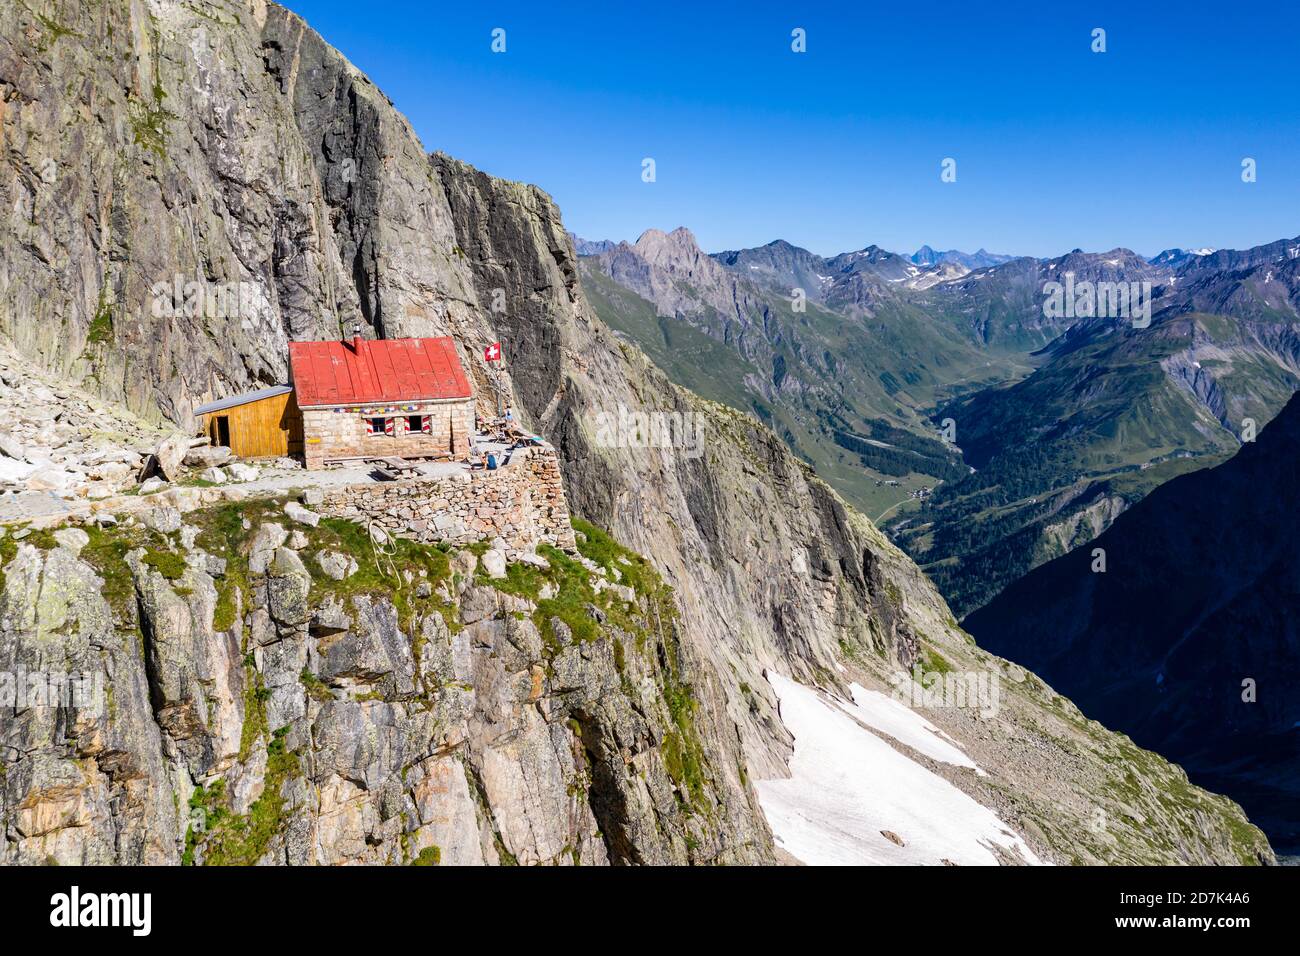 Vue aérienne de la cabane de montagne Cabane de l'A Neuve, située sur une formation rocheuse escarpée, près de la Fouly, Val de Ferret, Suisse Banque D'Images